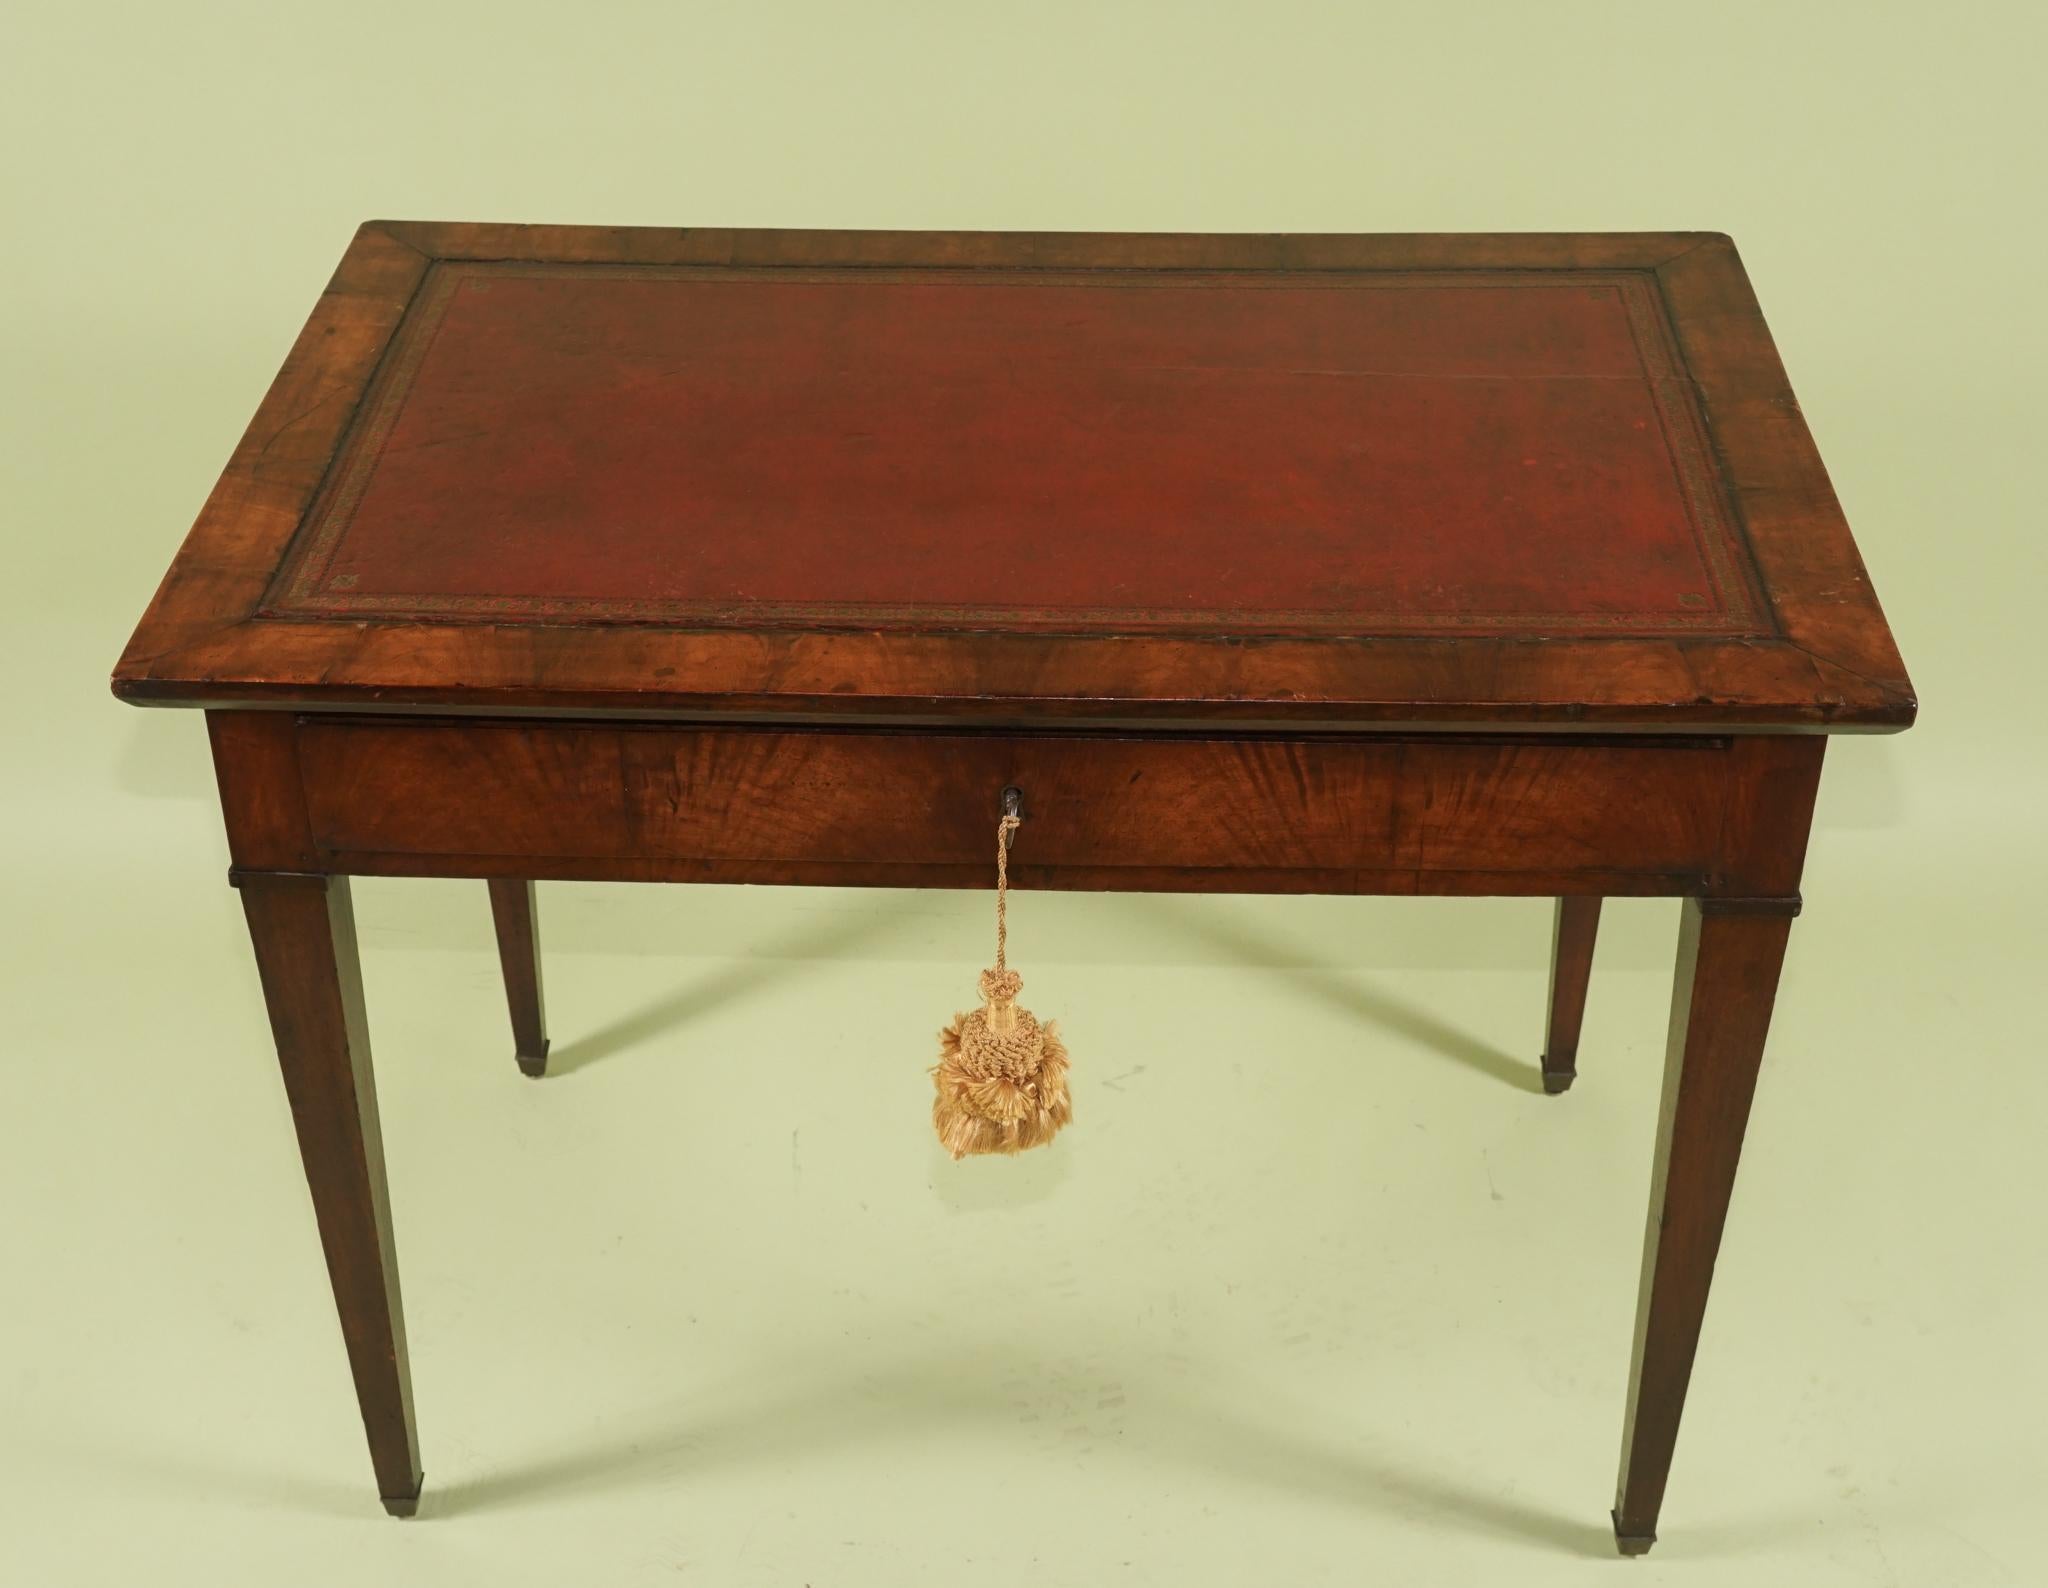 Cette belle table d'écriture d'époque a été construite en France entre 1790 et 1800 en riche acajou importé. Les bois ont été soigneusement sélectionnés pour créer un motif général de grain flamboyant autour du tablier de la table. Le plateau est